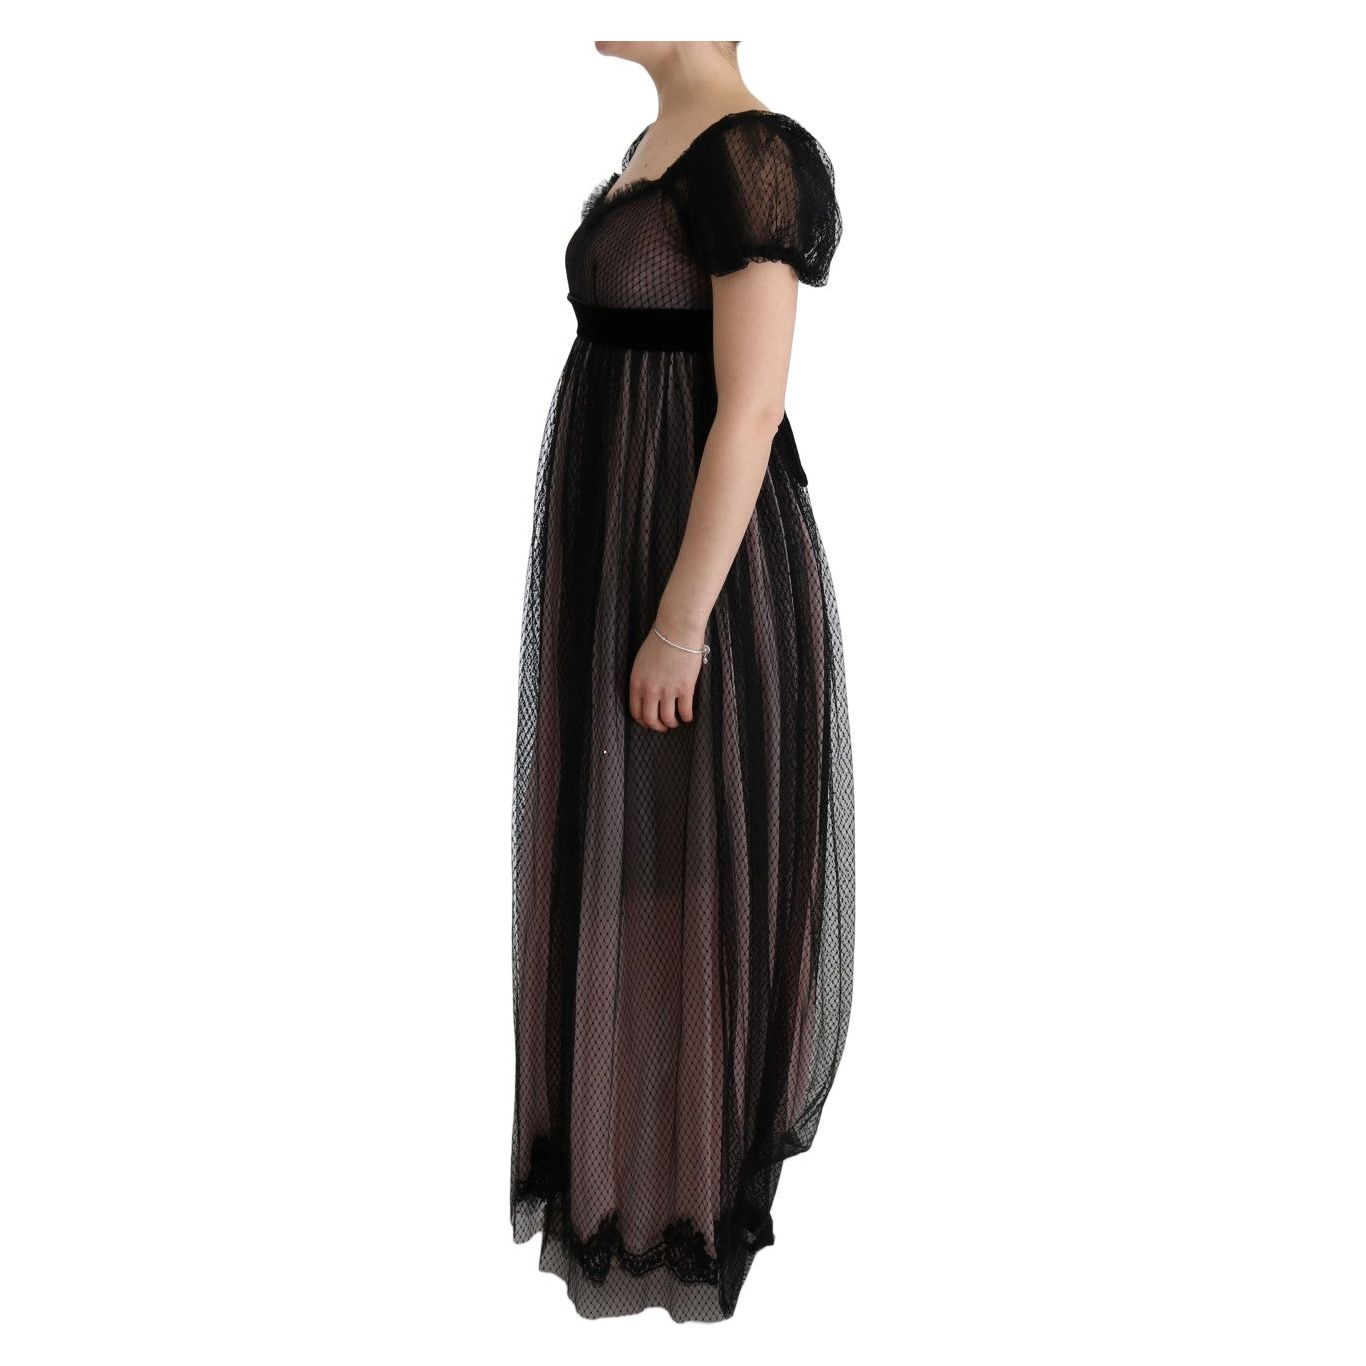 Dolce & Gabbana Elegant Full Length Shift Dress black-pink-silk-long-shift-dress 445560-black-pink-silk-long-shift-dress-1.jpg